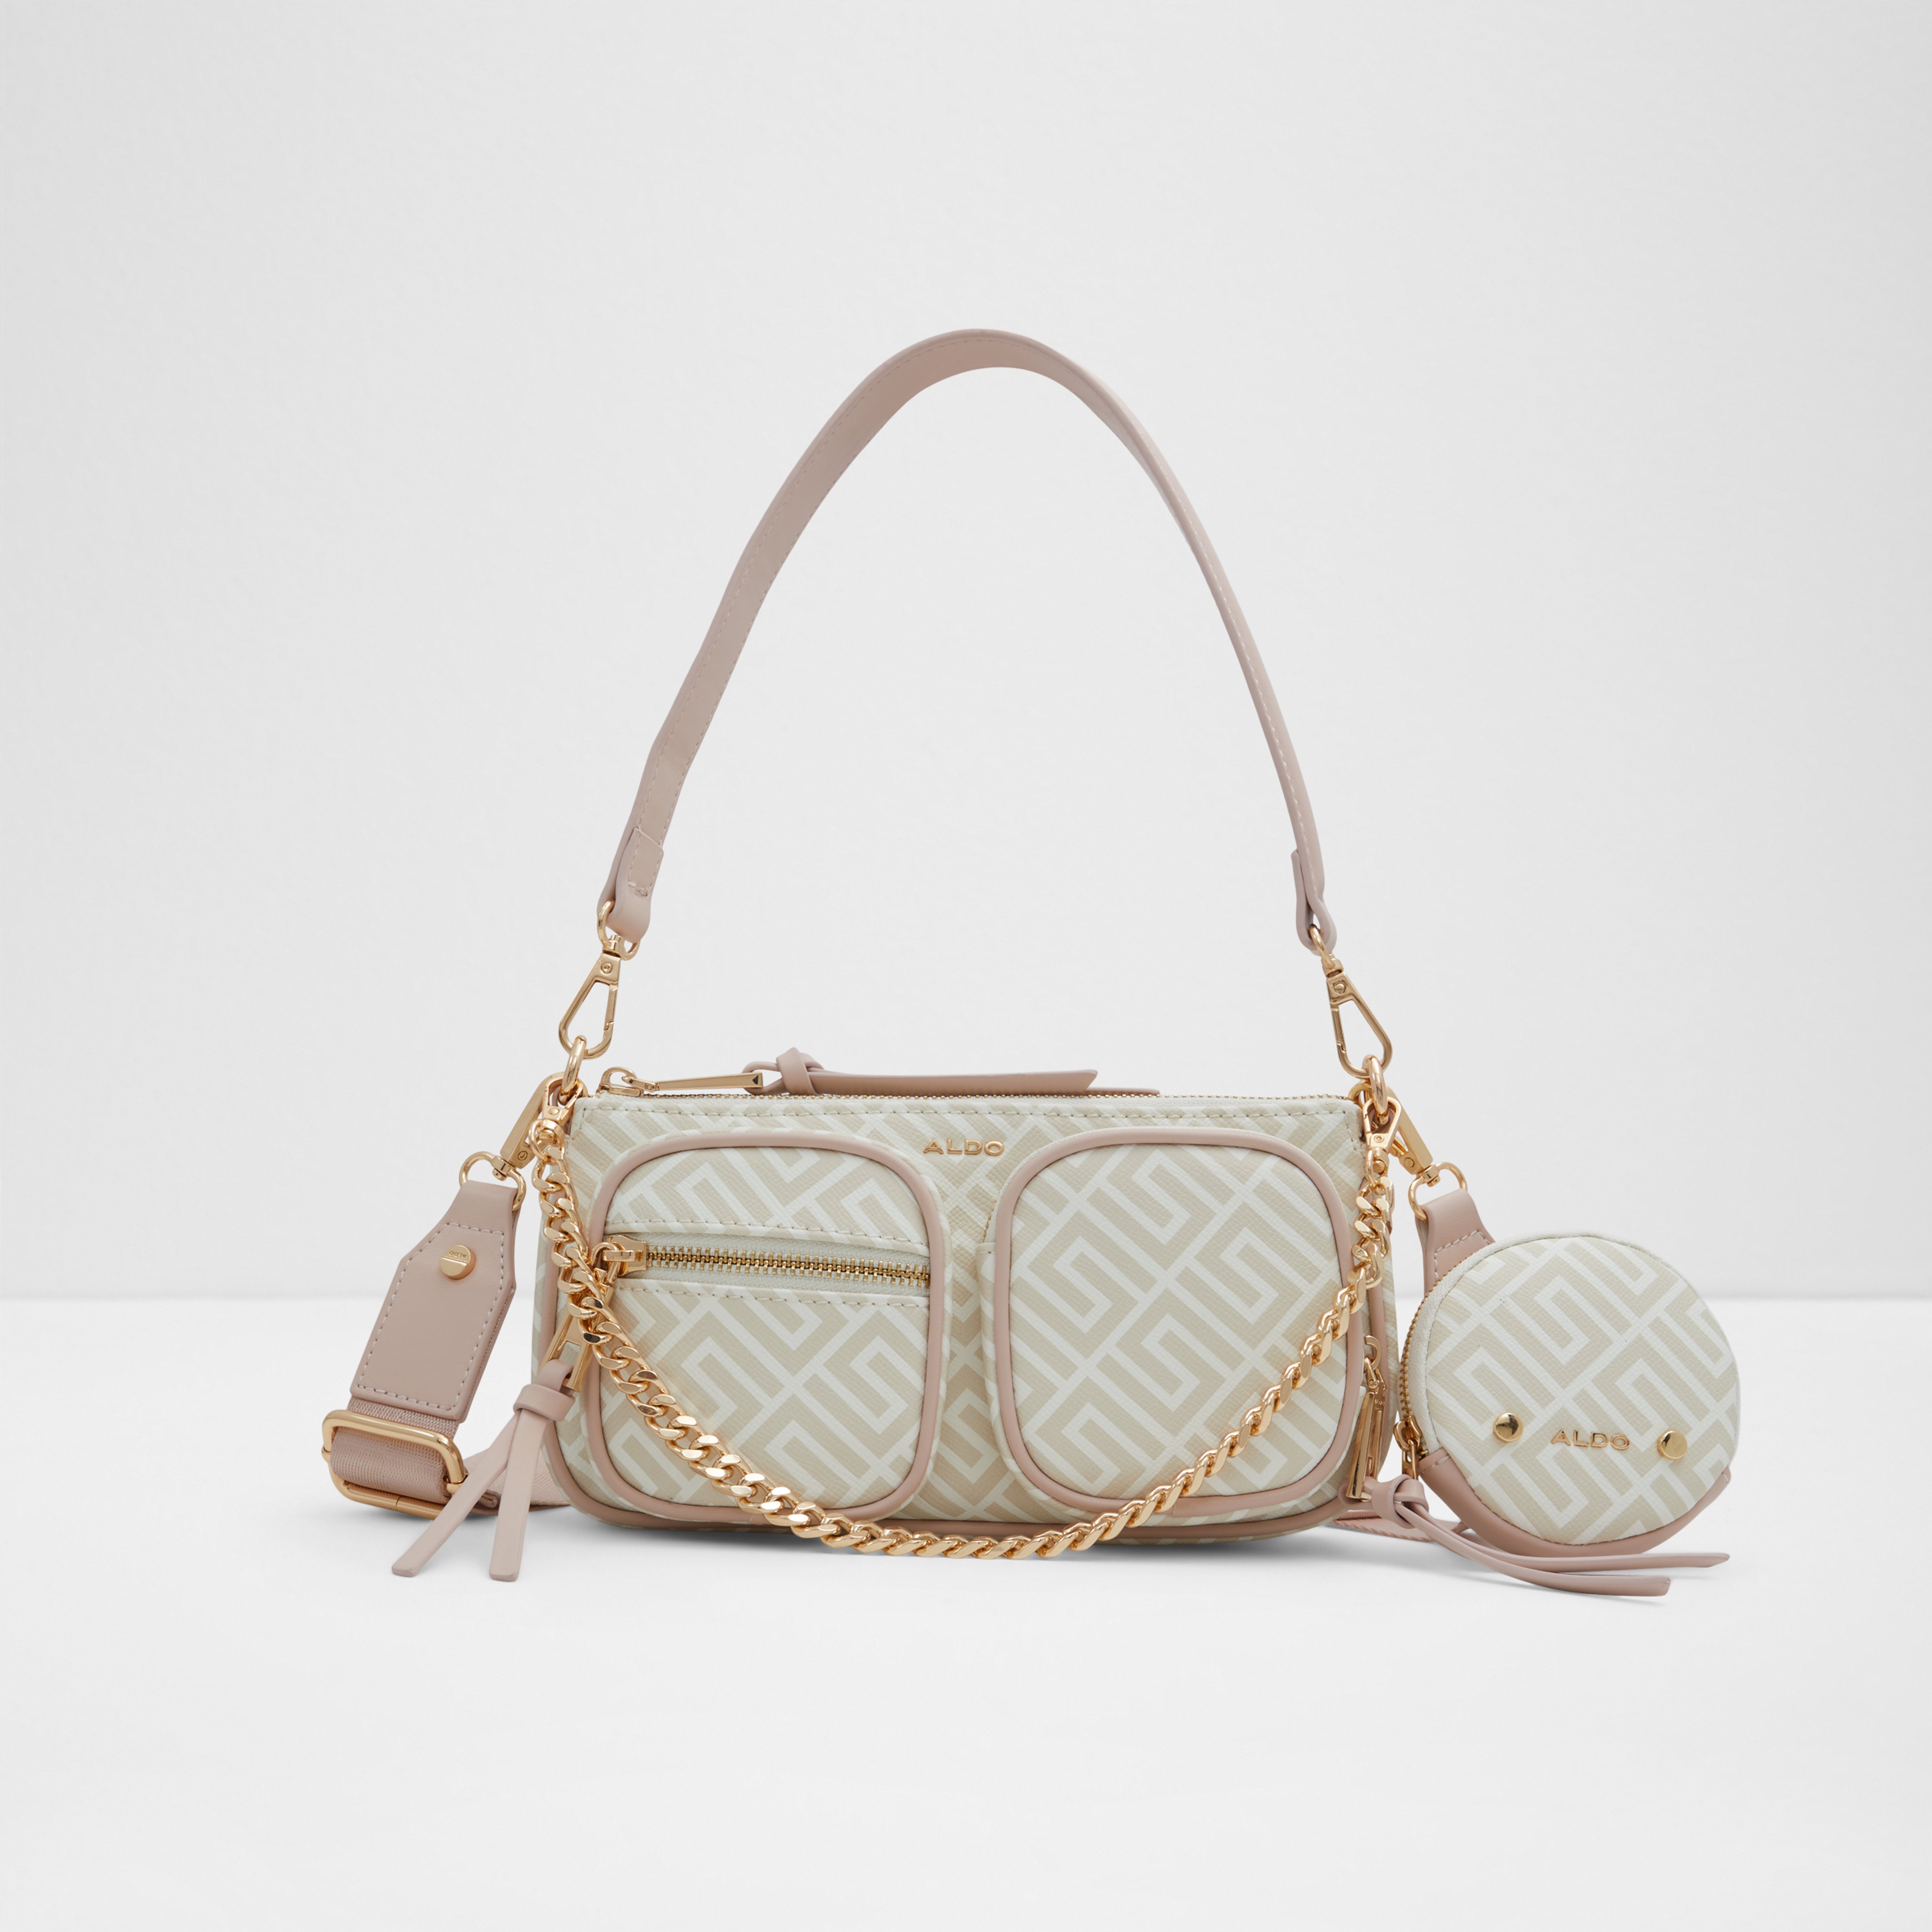 Aldo Handbag Everyday - Women's